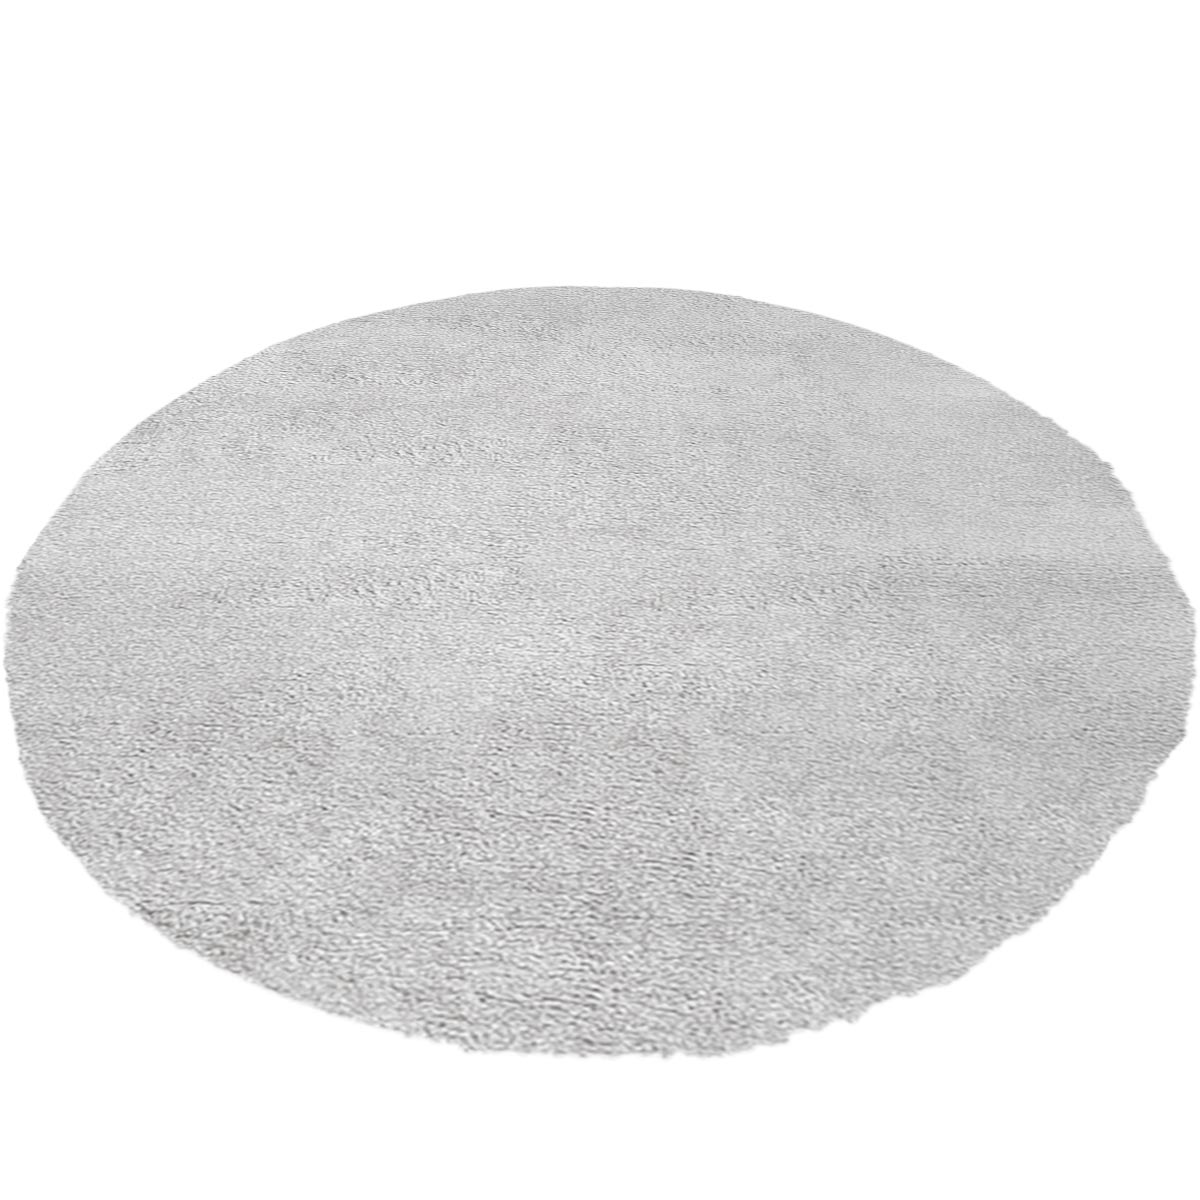 שטיח מונקו 10 אפור בהיר עגול | השטיח האדום